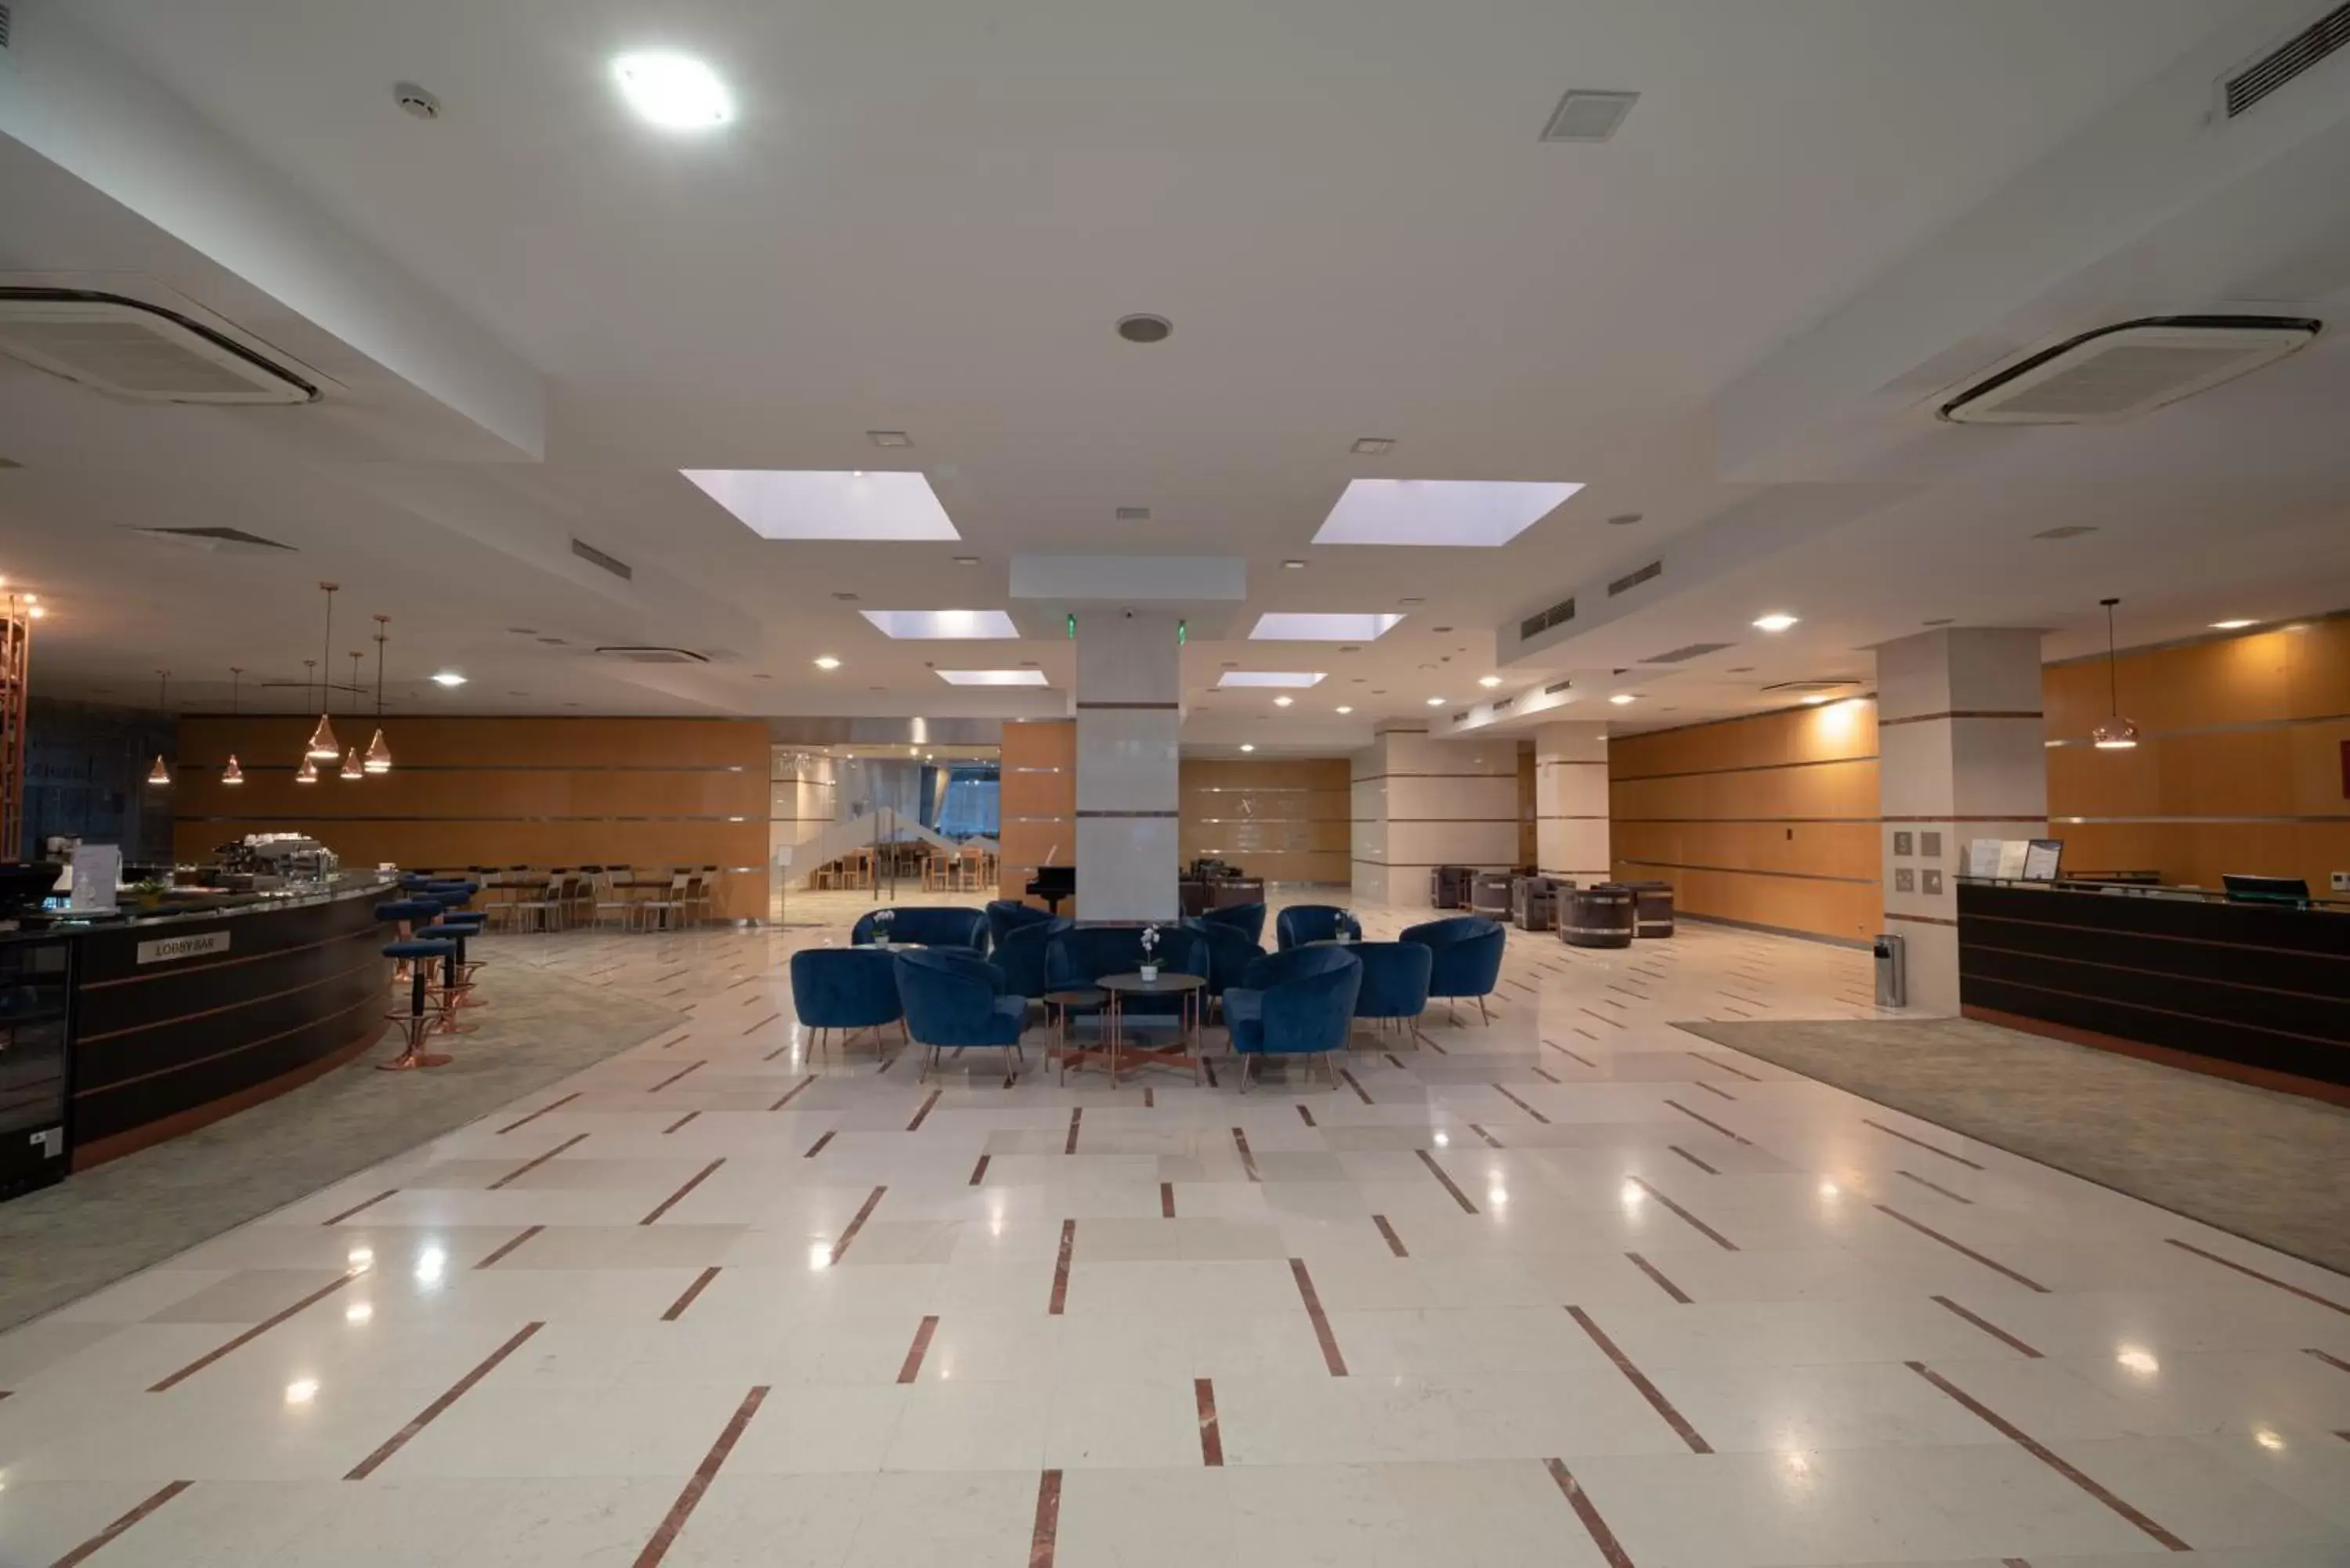 Lobby or reception in Vitosha Park Hotel